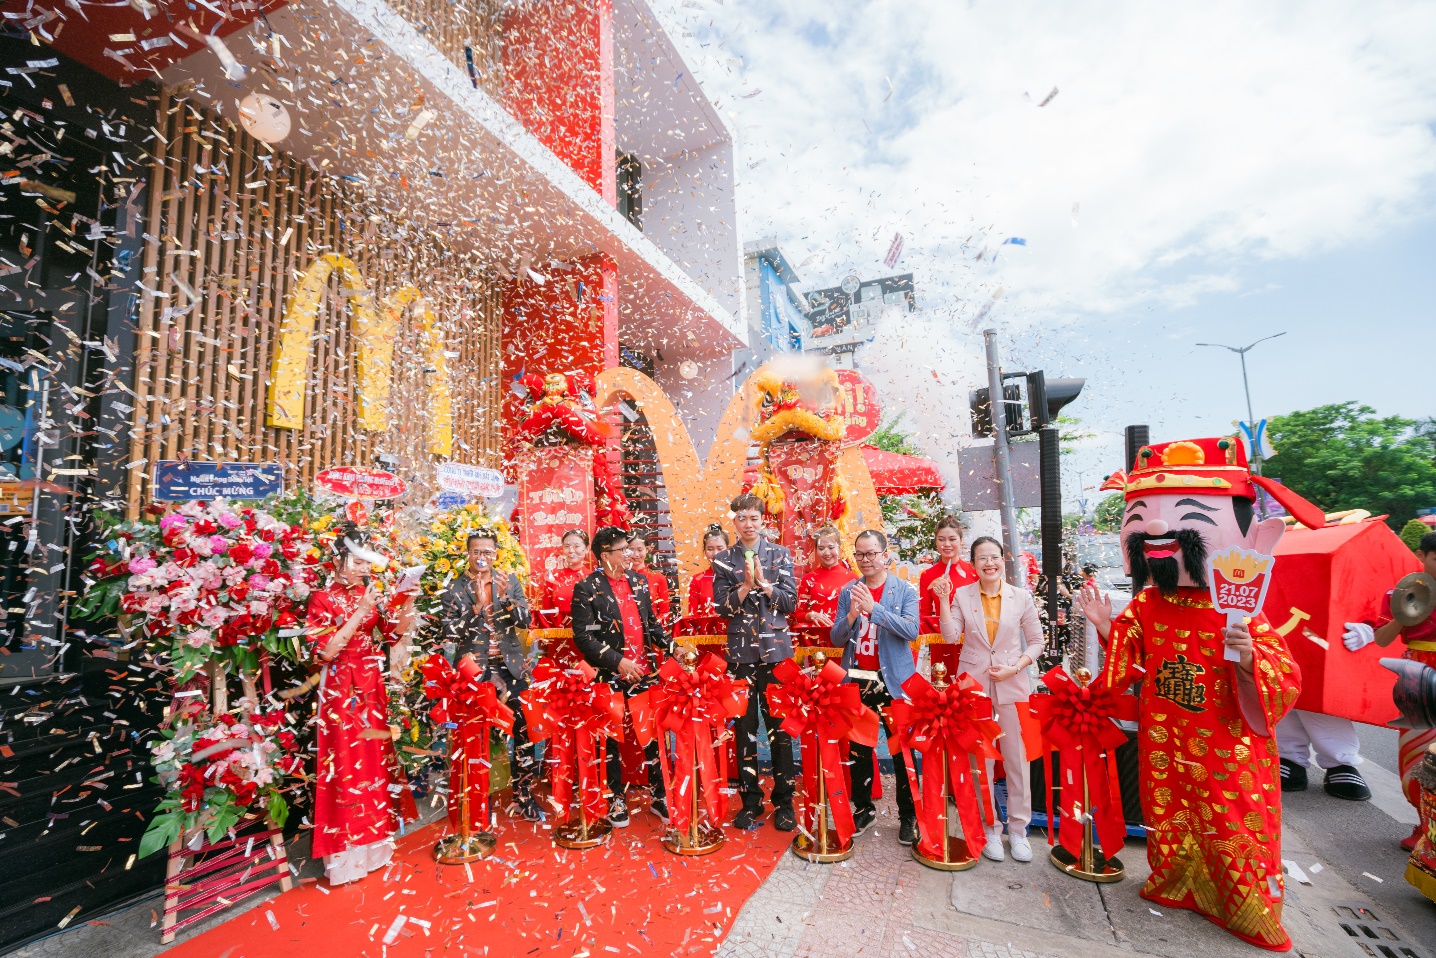 McDonald’s chuẩn bị khai trương cửa hàng đầu tiên tại Đà Nẵng, tung nhiều khuyến mãi chiều lòng thực khách - Ảnh 1.